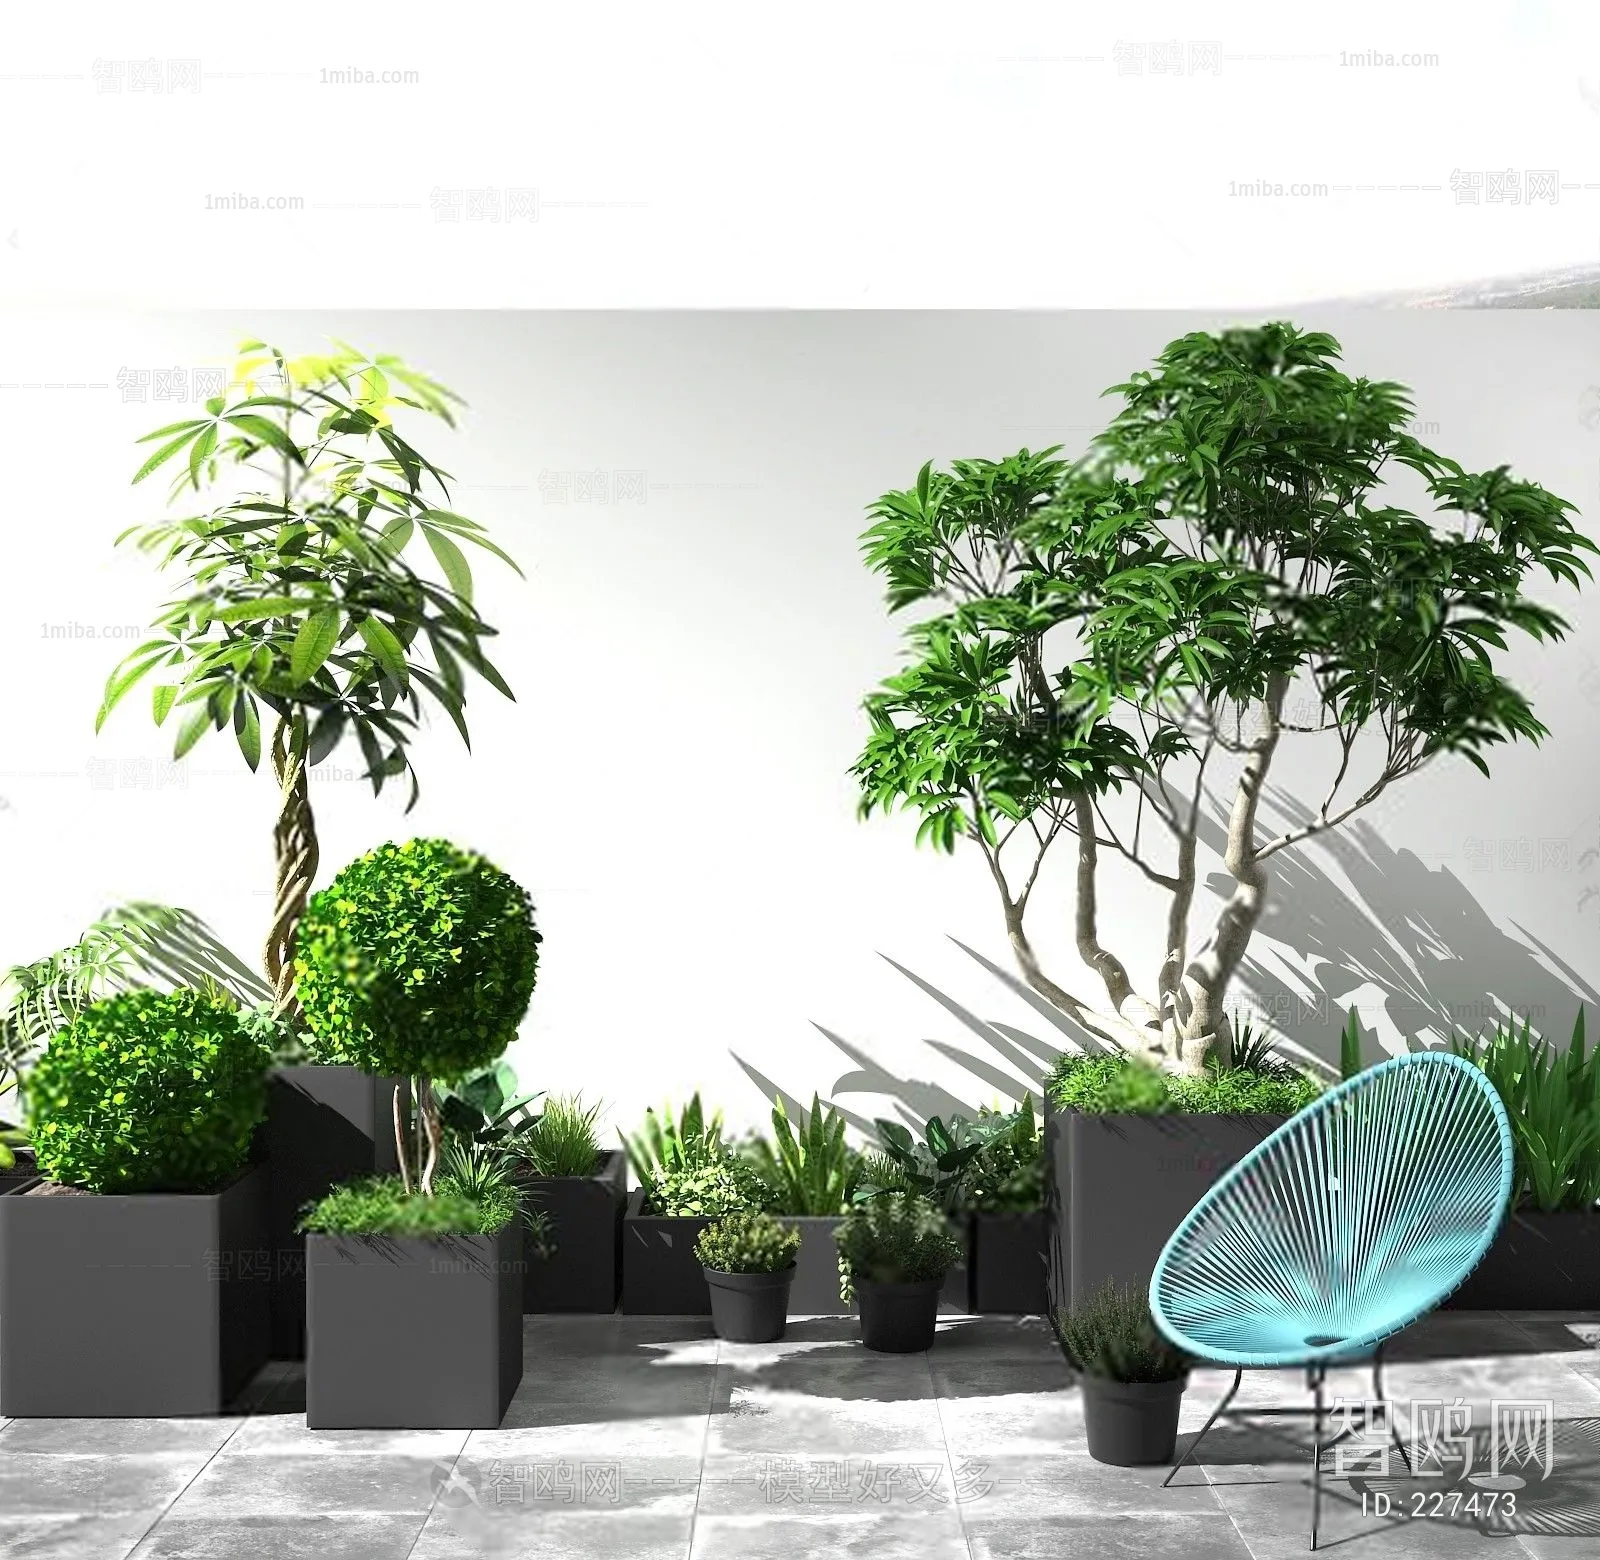 PLANT 3D MODELS – 041